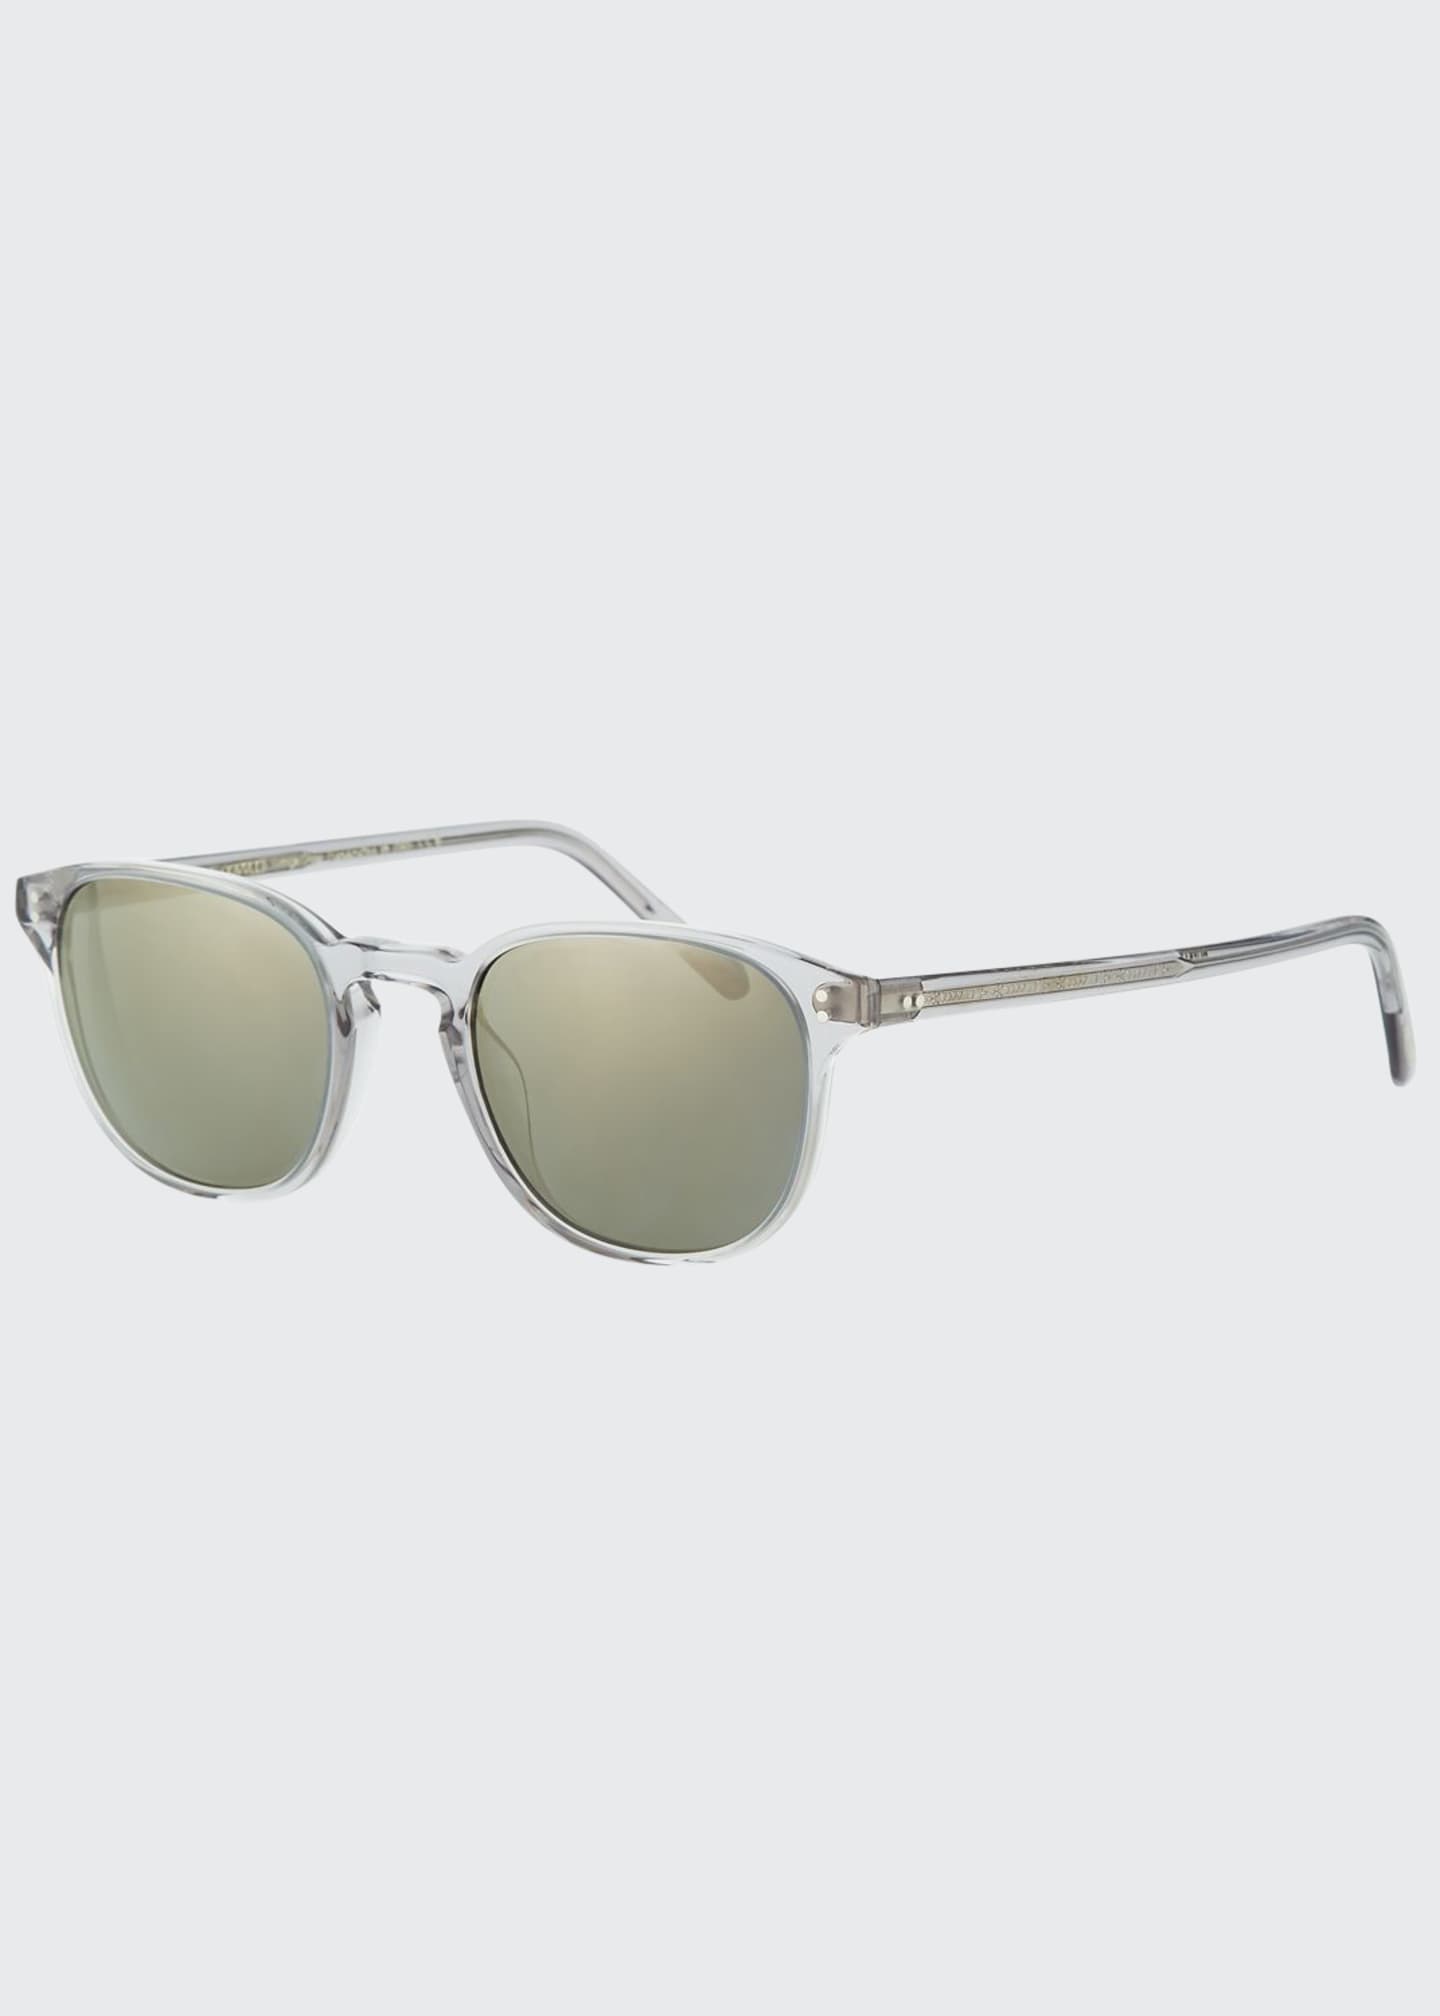 Oliver Peoples Men's Fairmont Acetate Sunglasses - Bergdorf Goodman